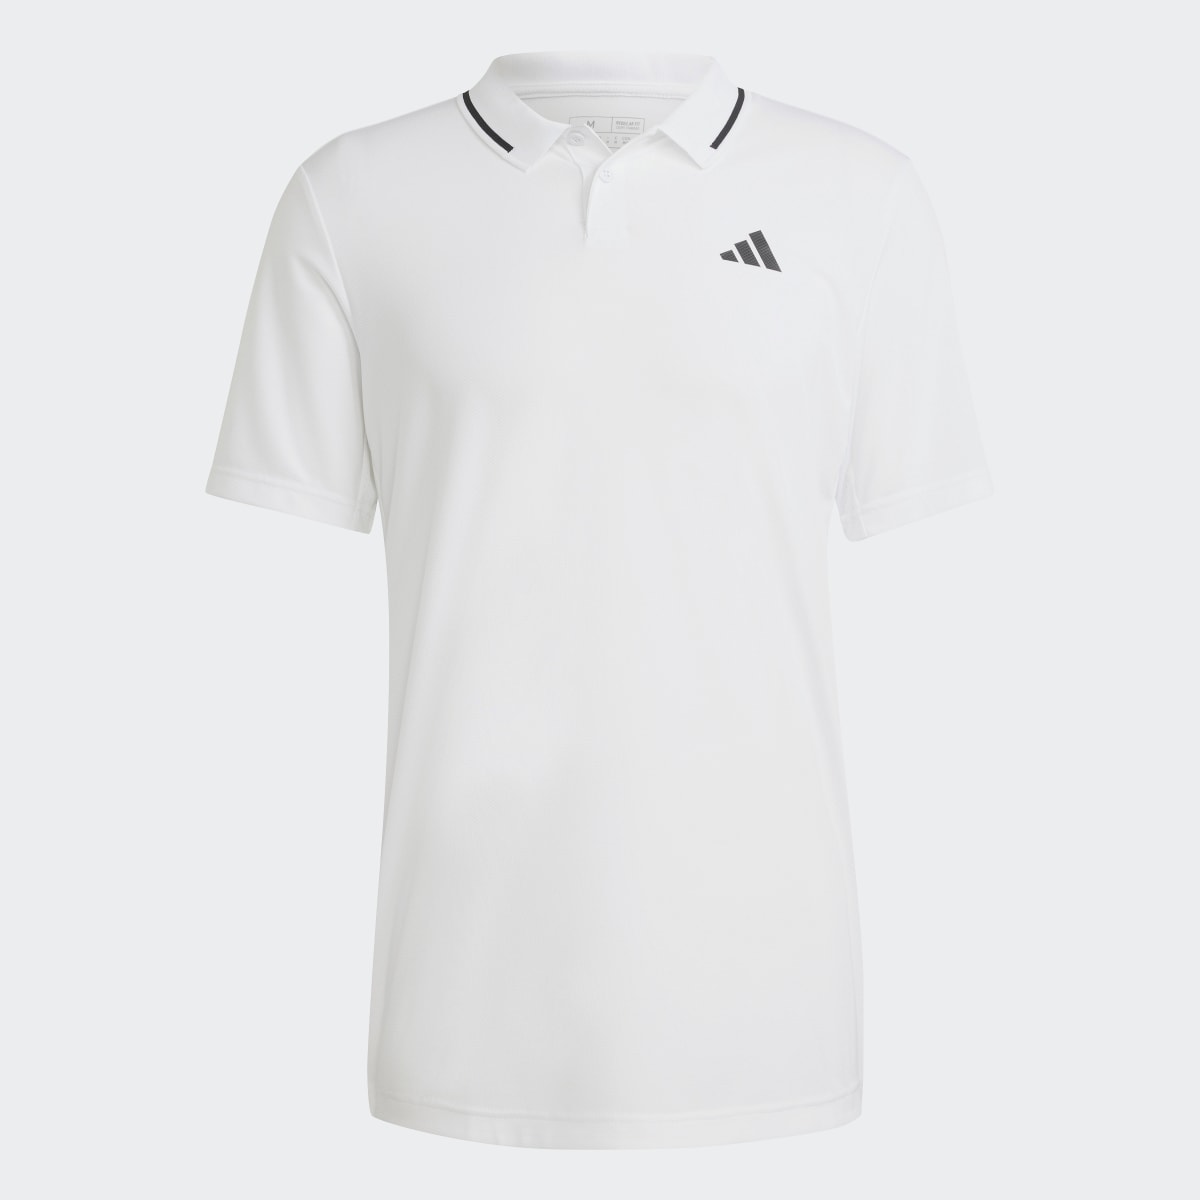 Adidas Club Tennis Piqué Polo Shirt. 5